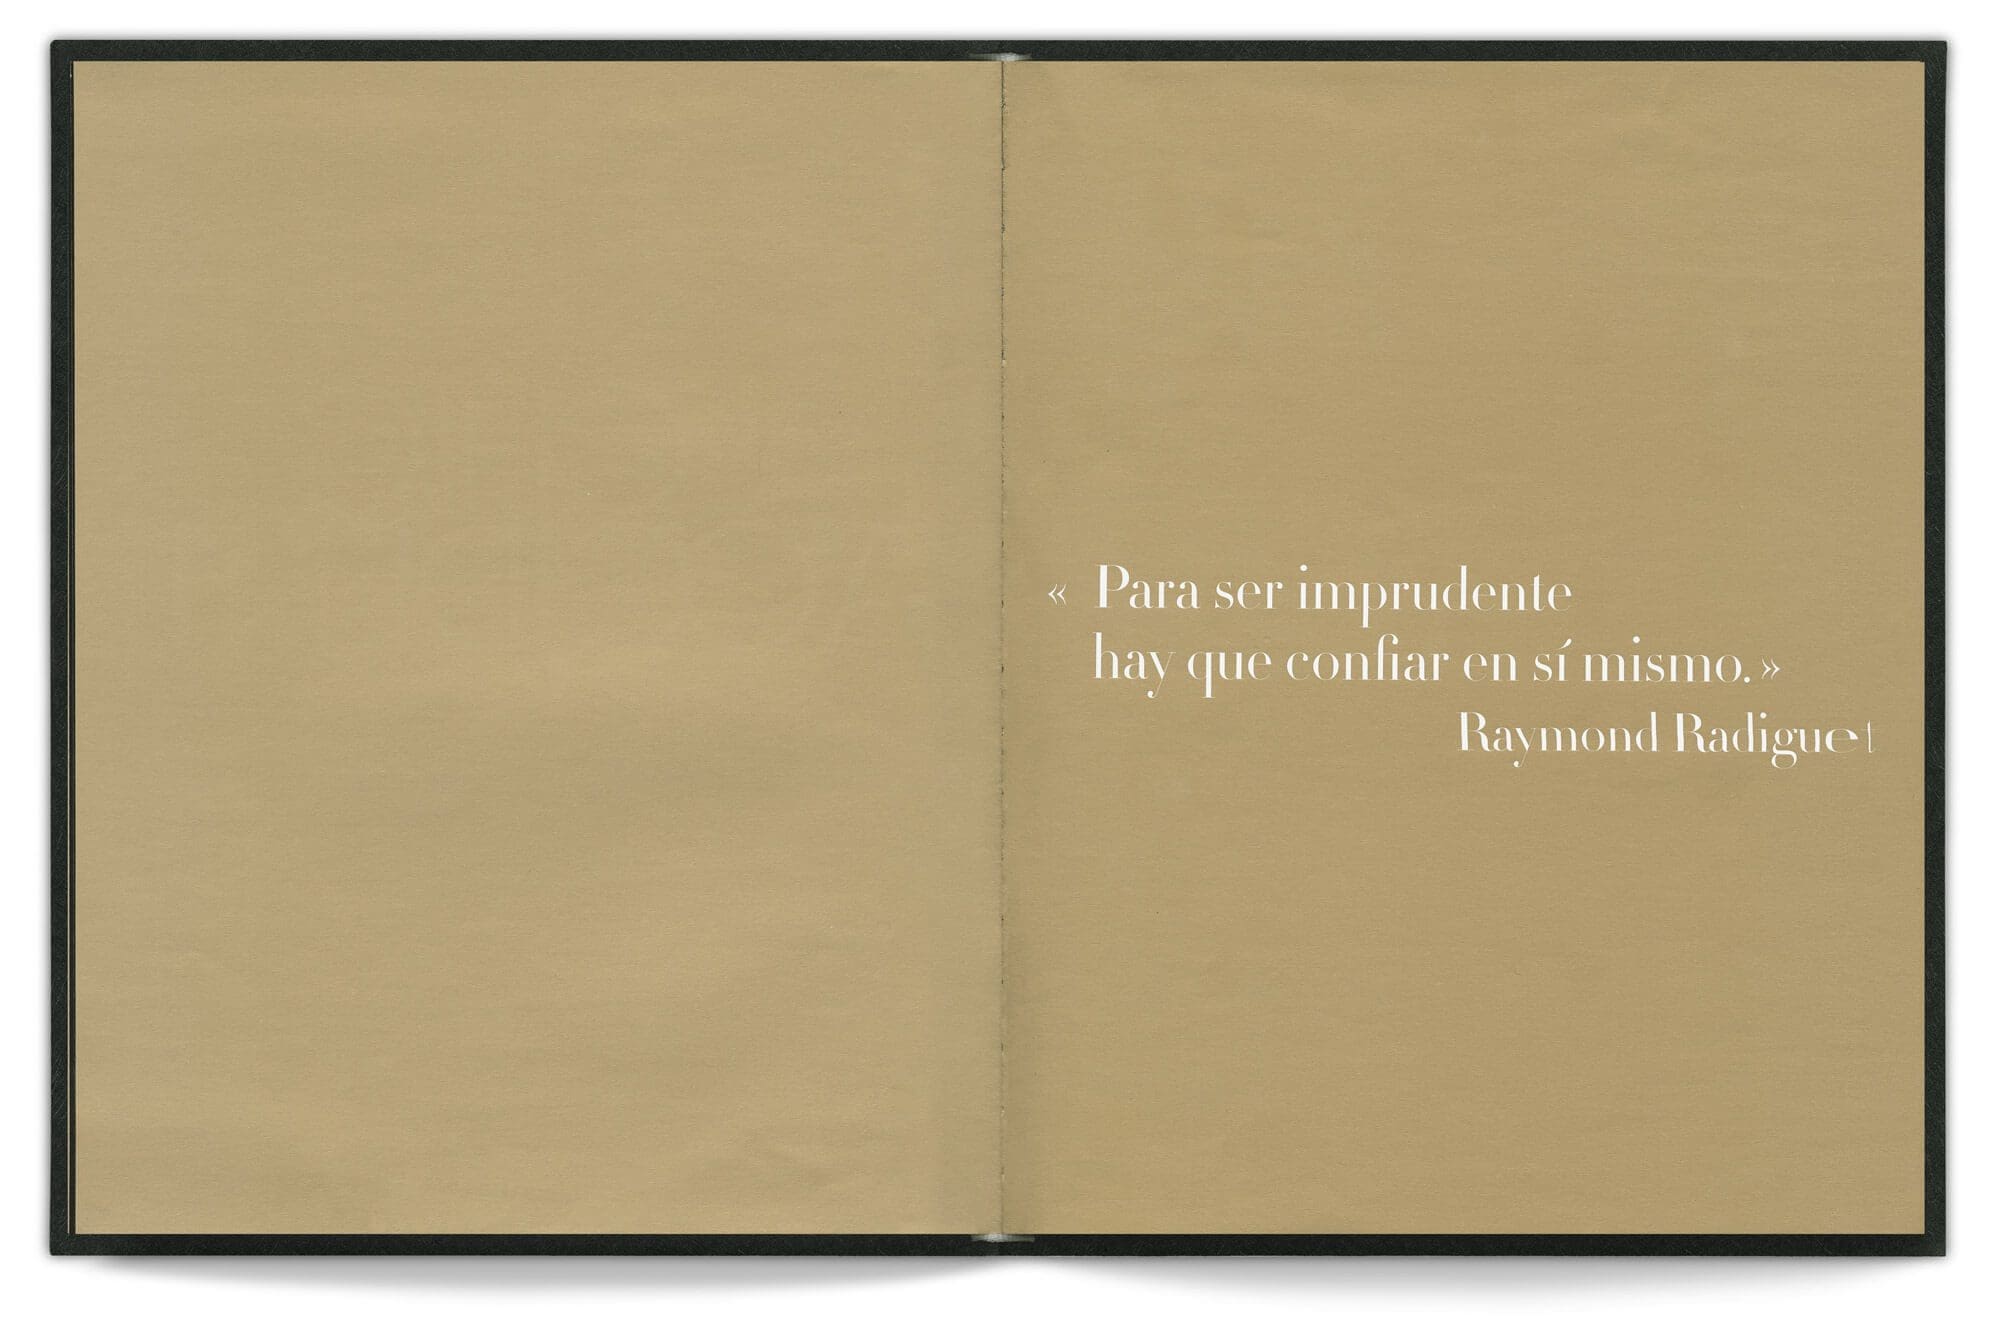 Une citation de Raymond Radiguet dans le livre d'Emmanuel Pucault, fondateur de Chic by accident, design editorial IchetKar